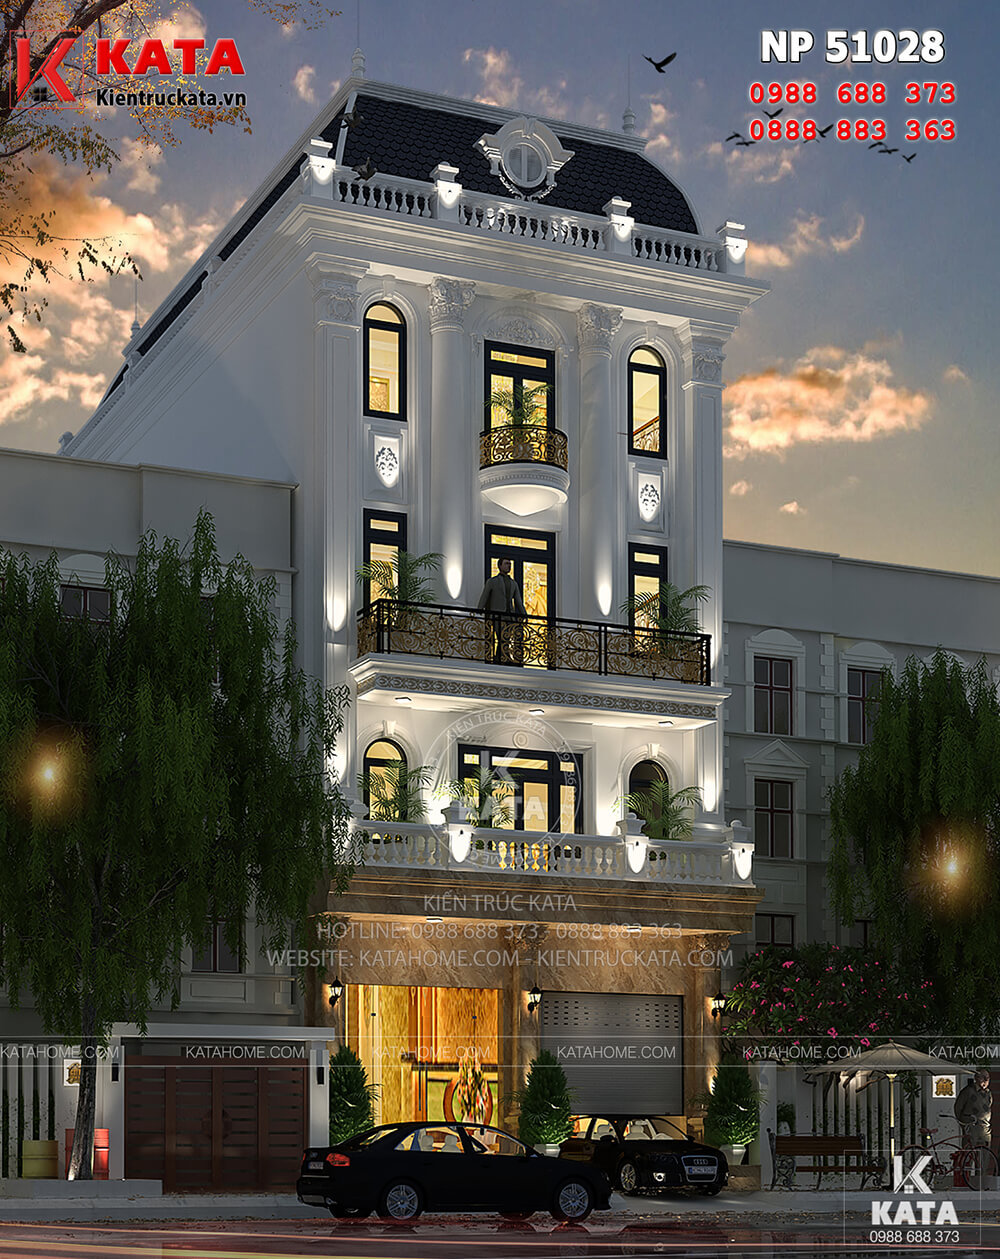 Mẫu thiết kế khách sạn nhà phố tại Hà Nội ấn tượng và đẳng cấp ở mọi góc nhìn